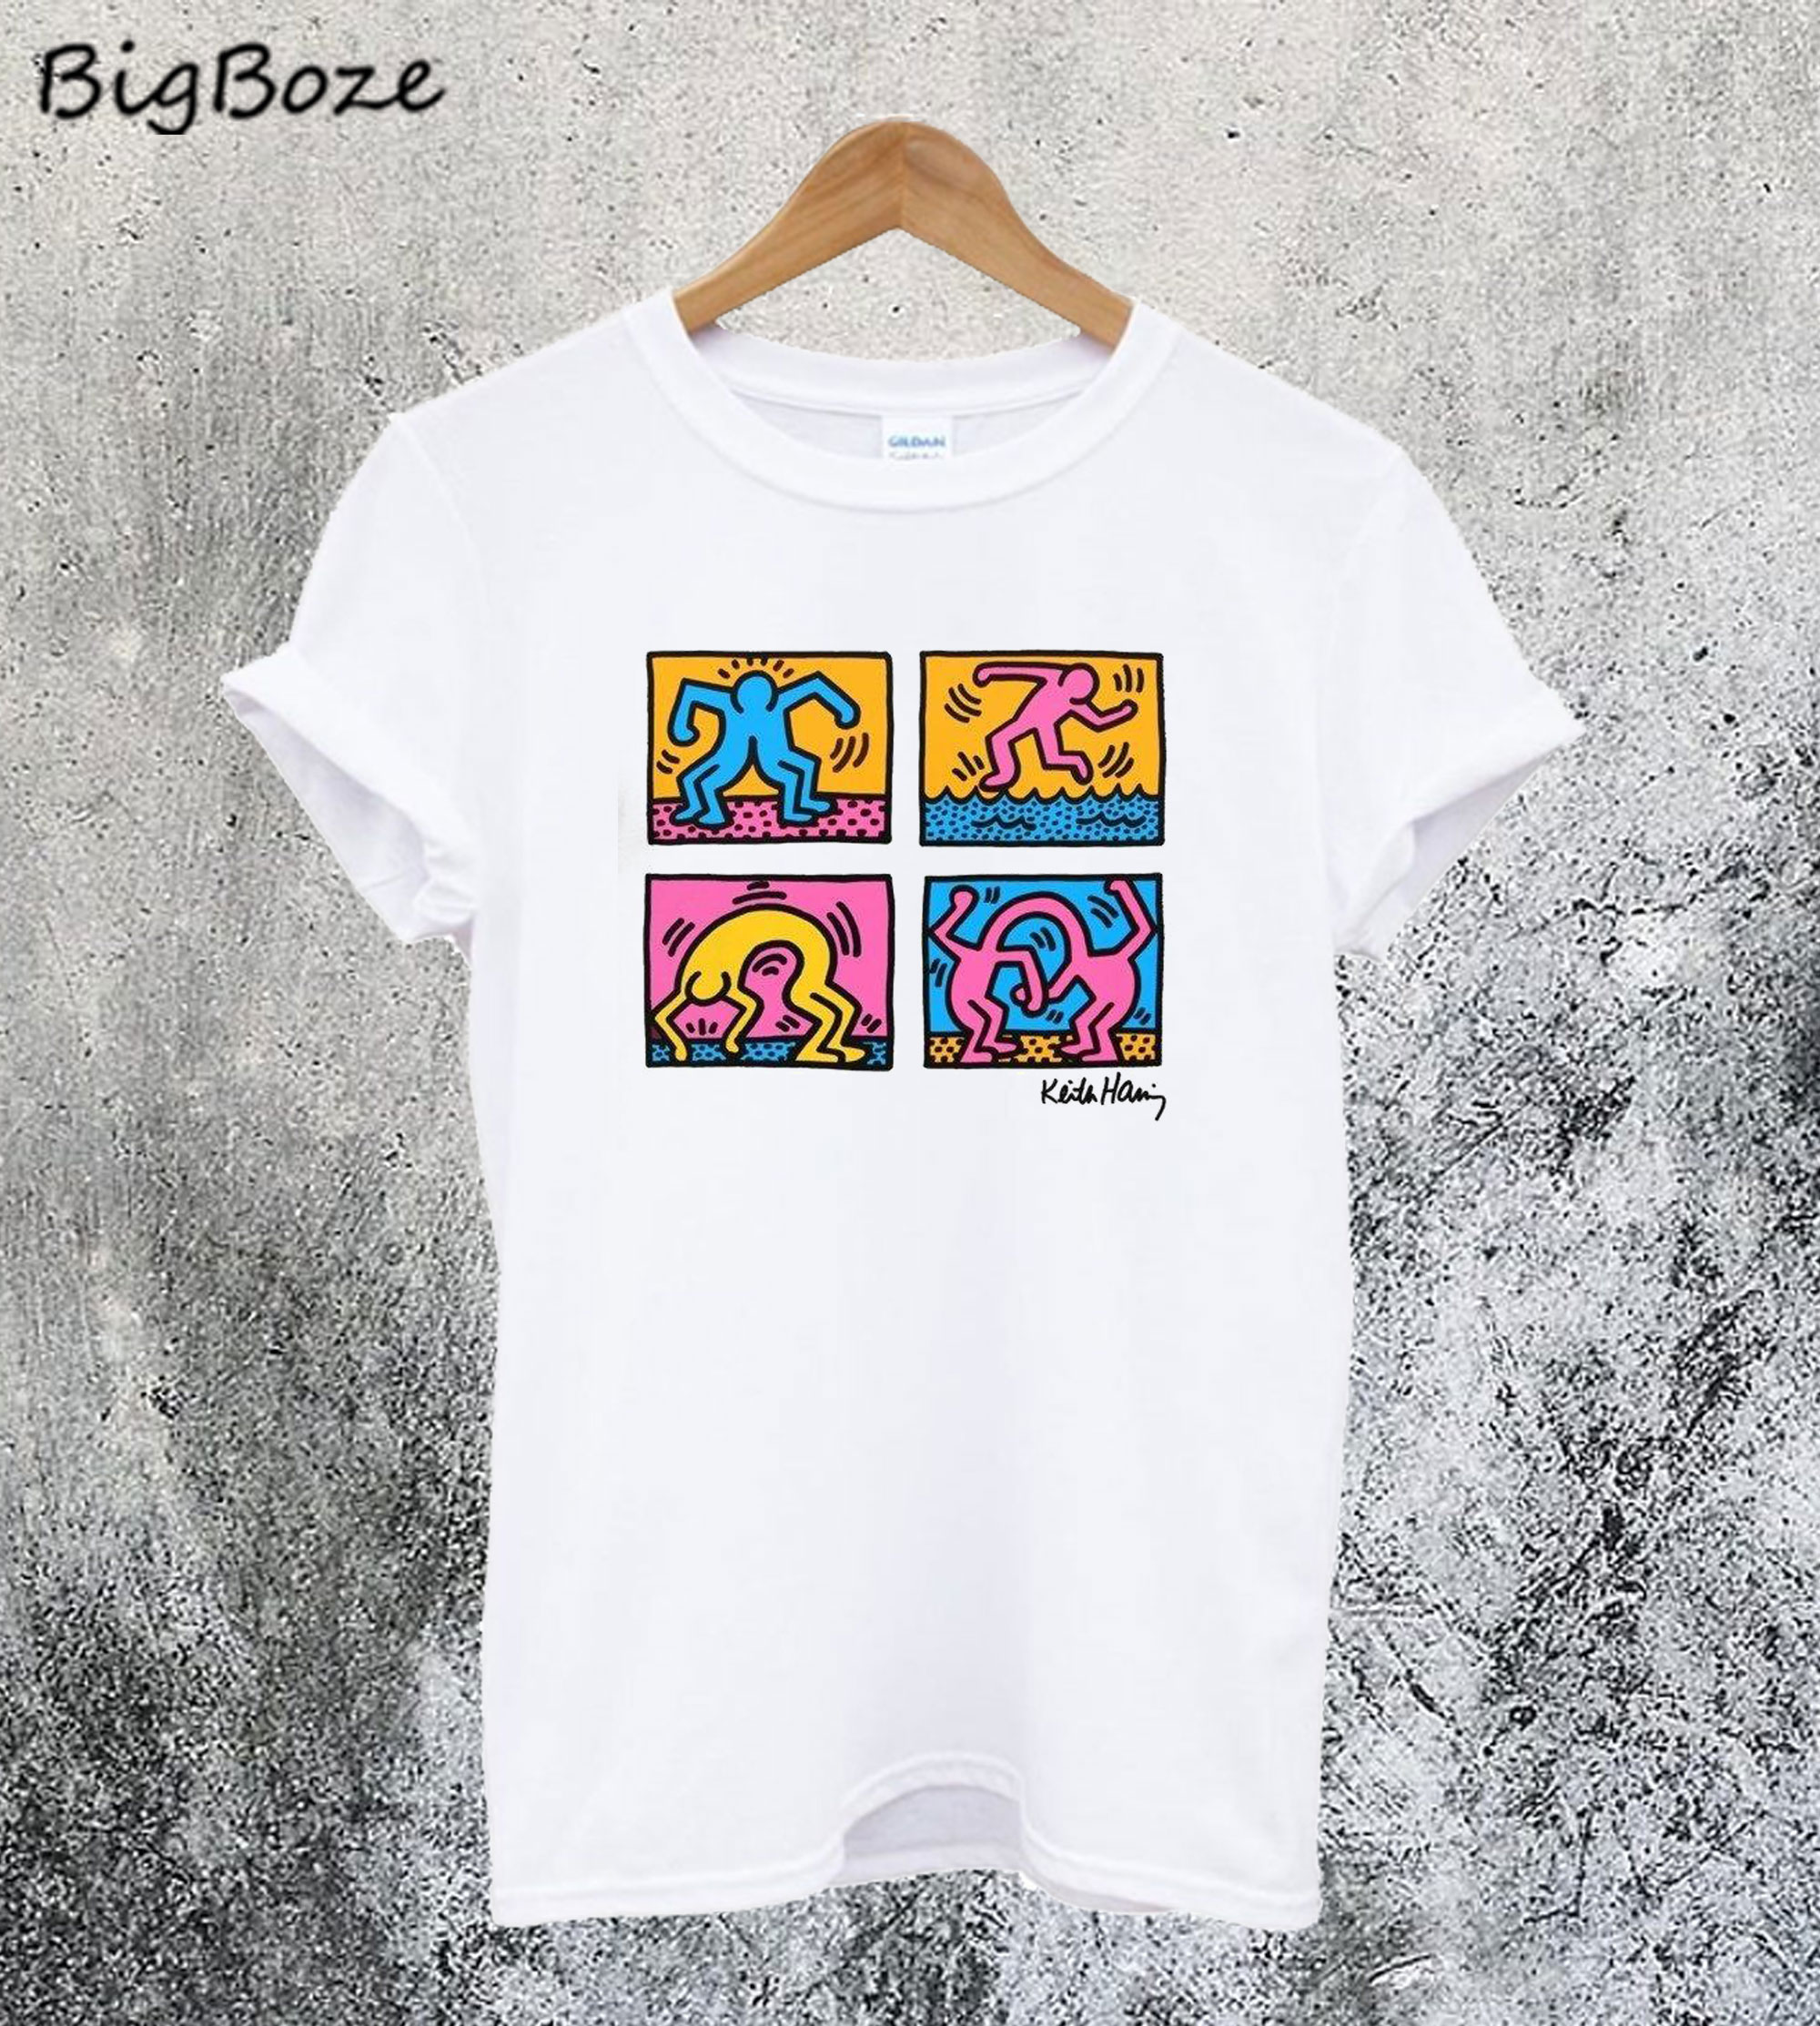 Keith Haring Pop T-Shirt